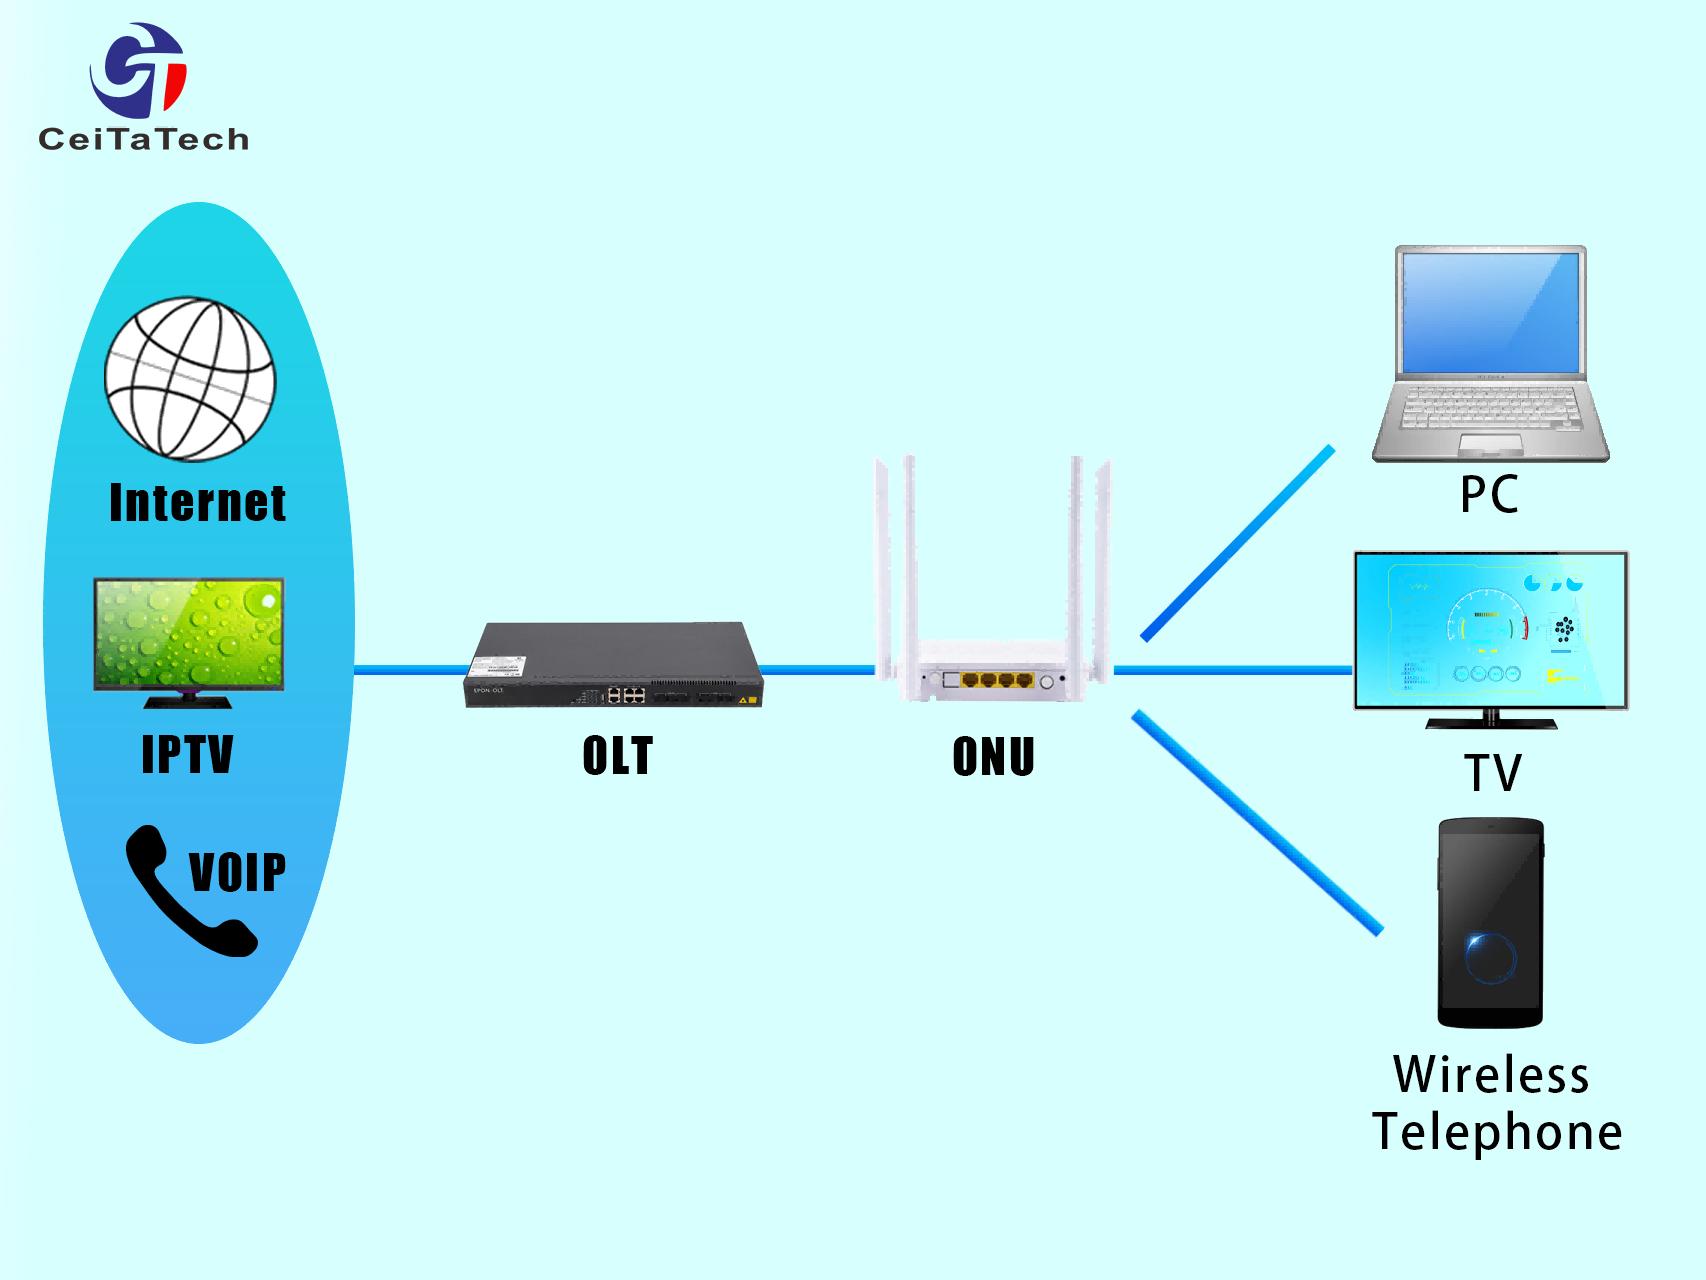 Router bezprzewodowy；ONU；ONT；OLT；objaśnienie terminologii dotyczącej transceiverów światłowodowych